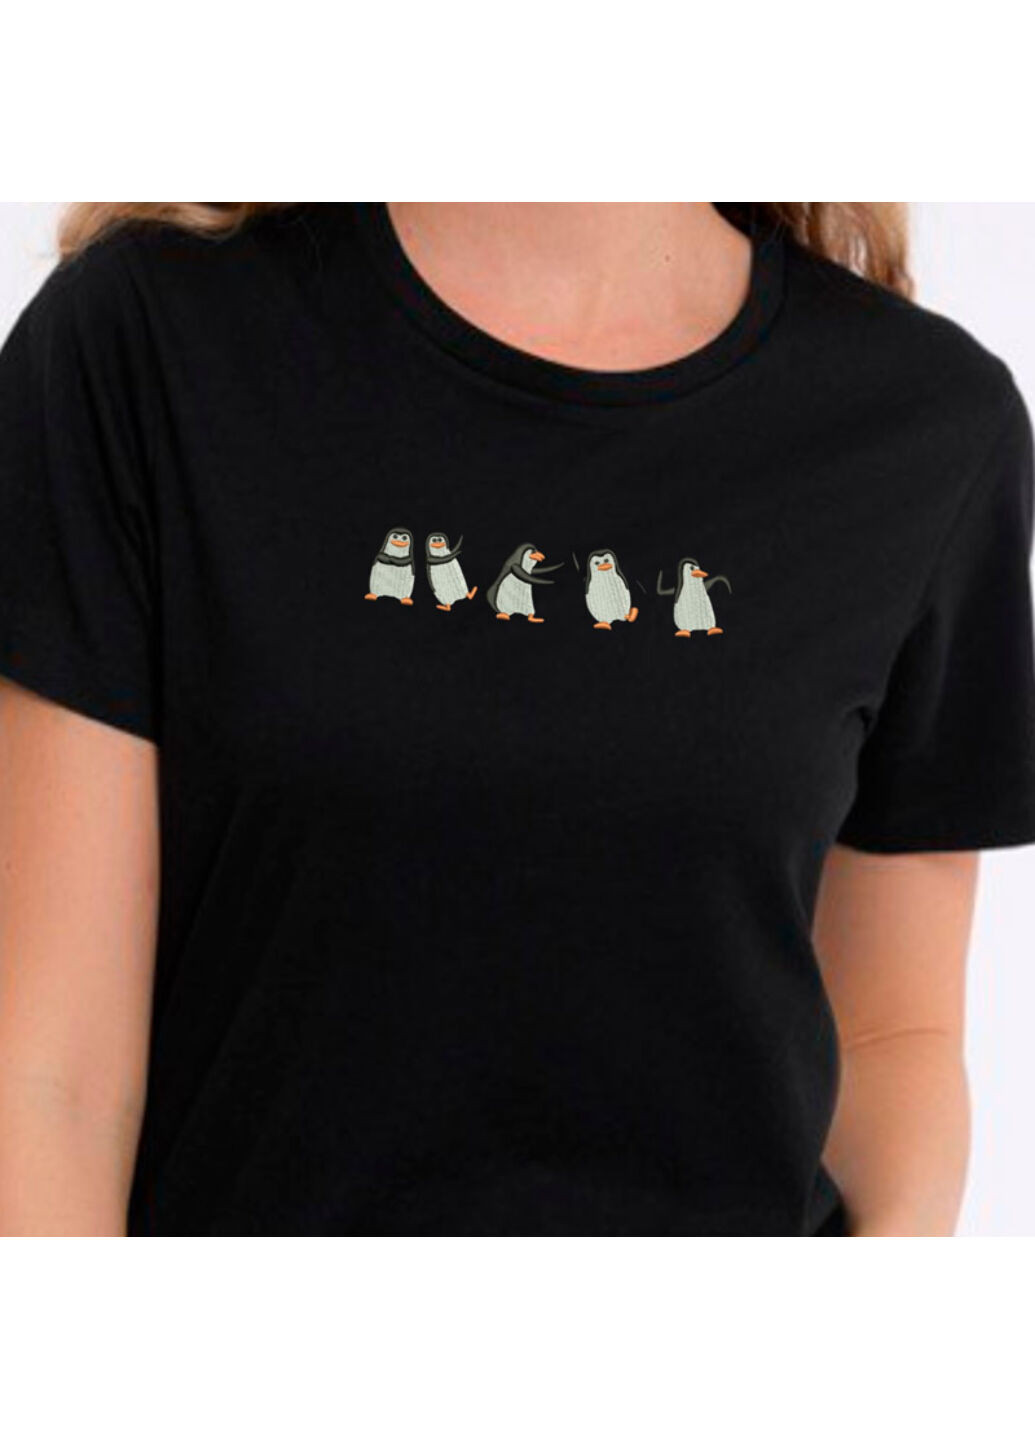 Черная футболка с вышивкой пингвинов 02-2 женская черный s No Brand